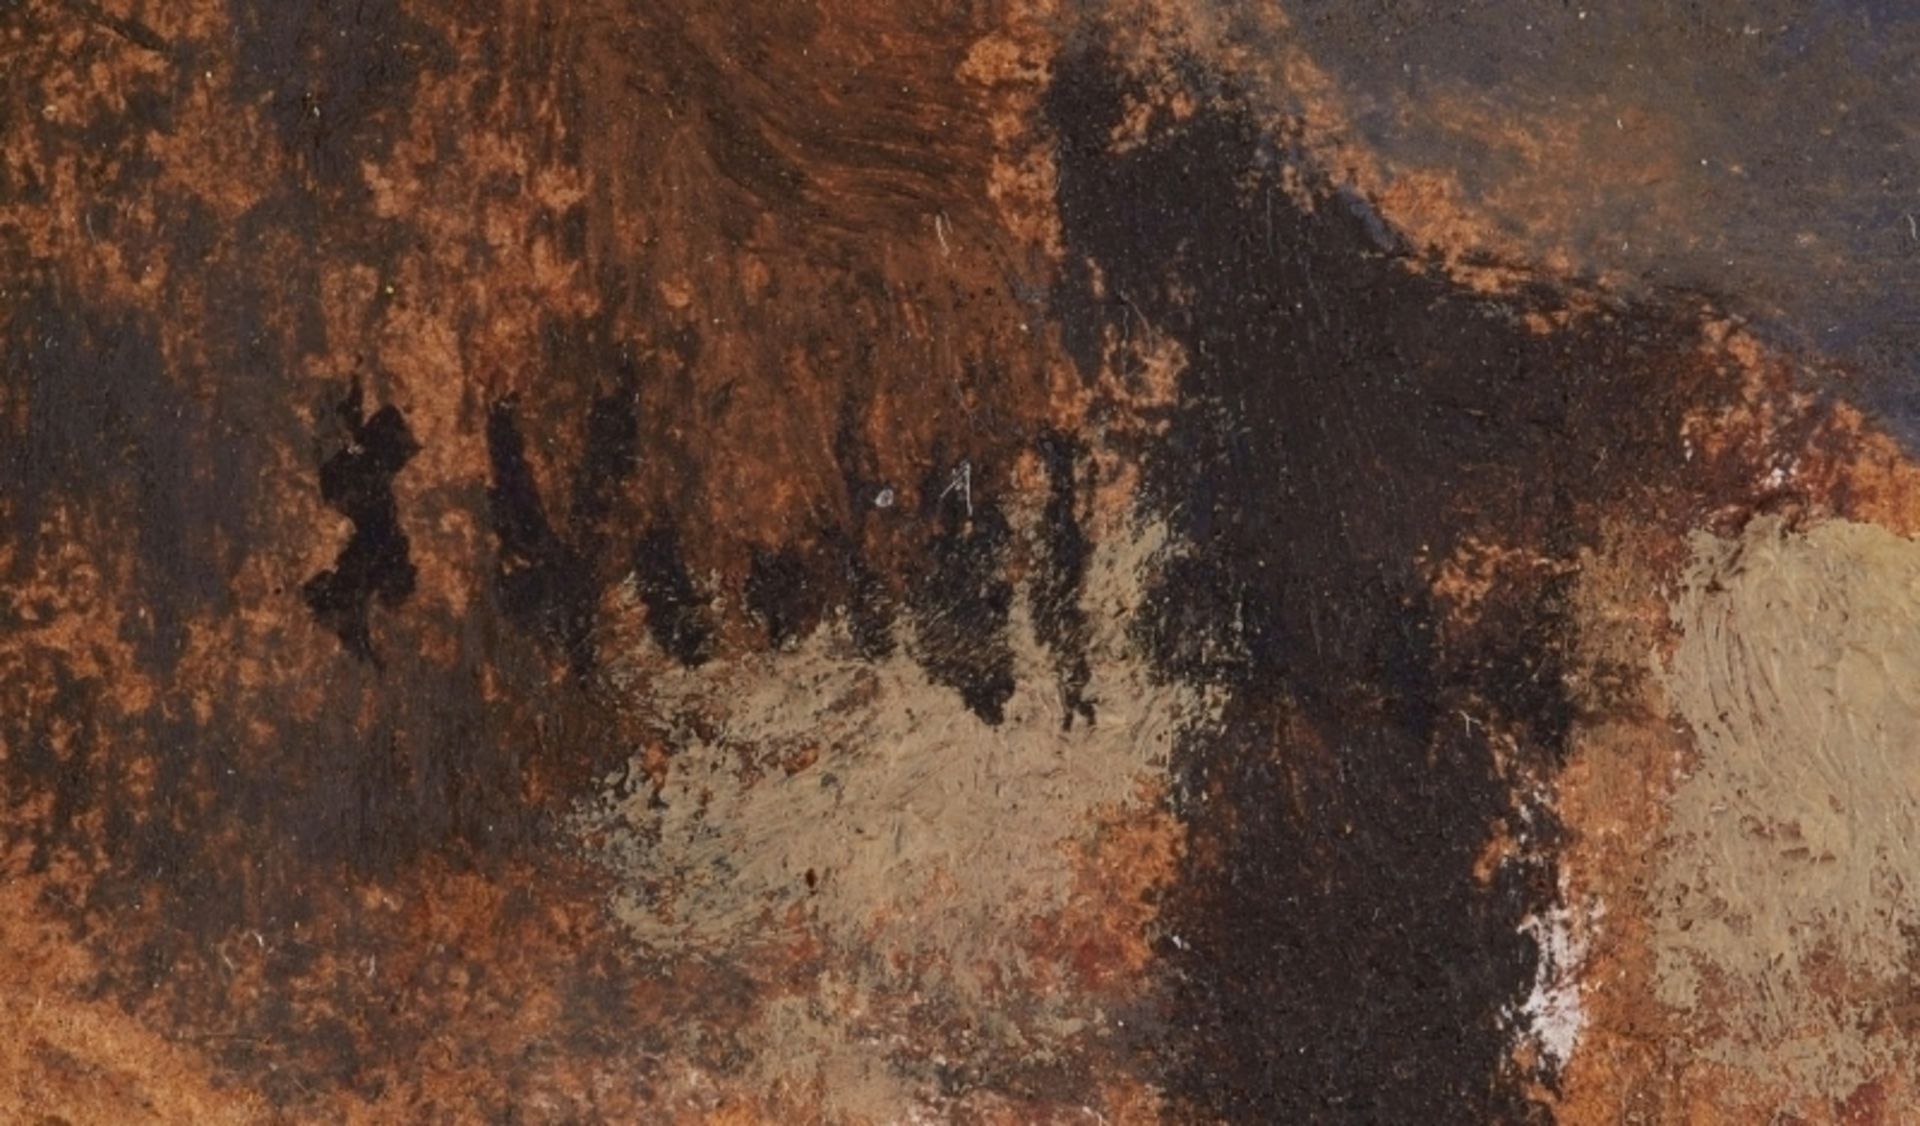 Vuillard, Edouard - Image 45 of 51